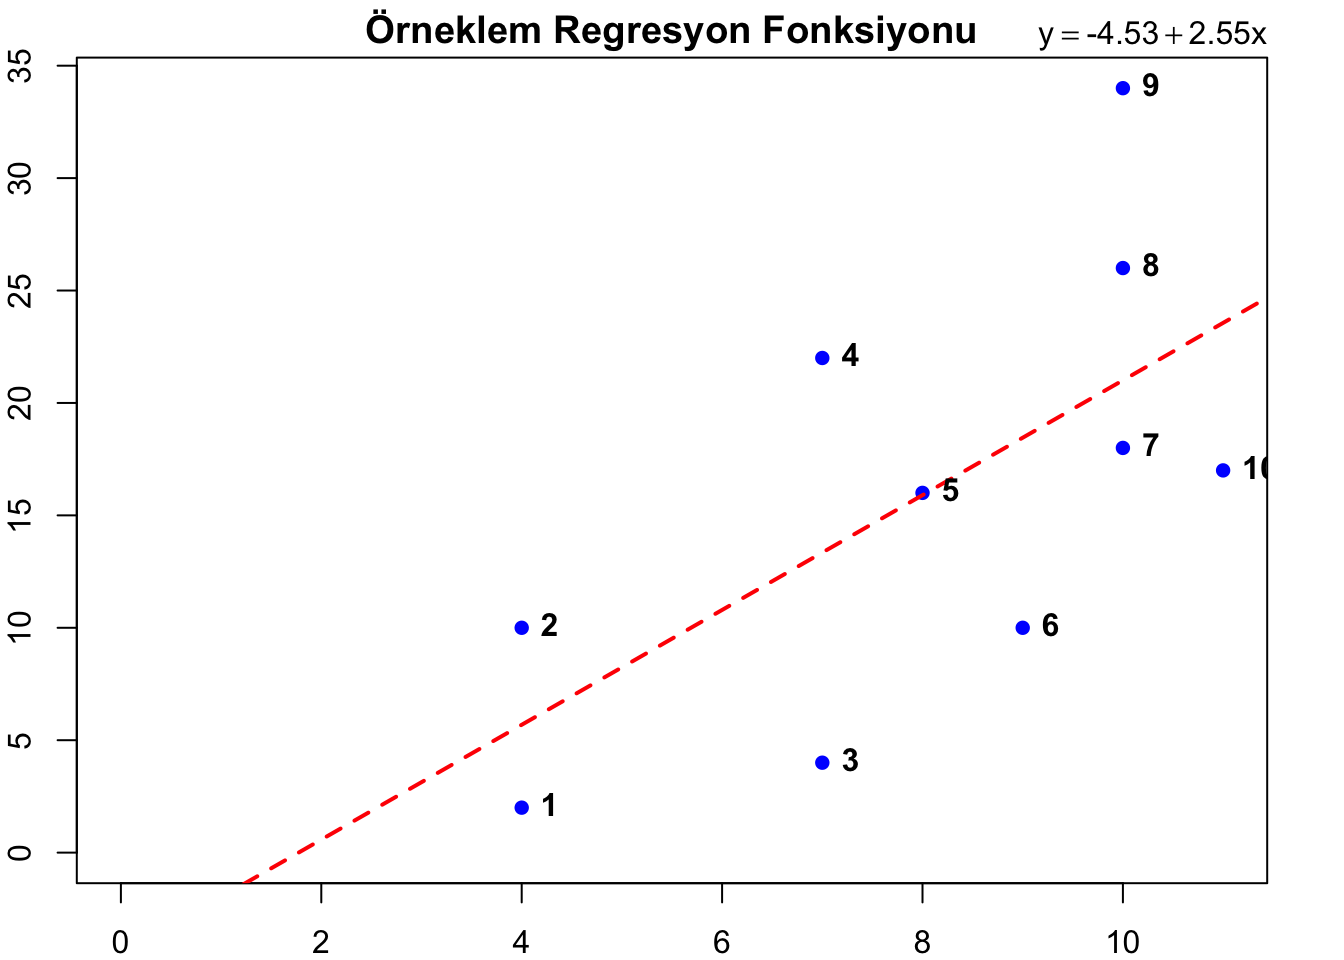 Örneklem Regresyon Fonksiyonu Detaylı Grafik